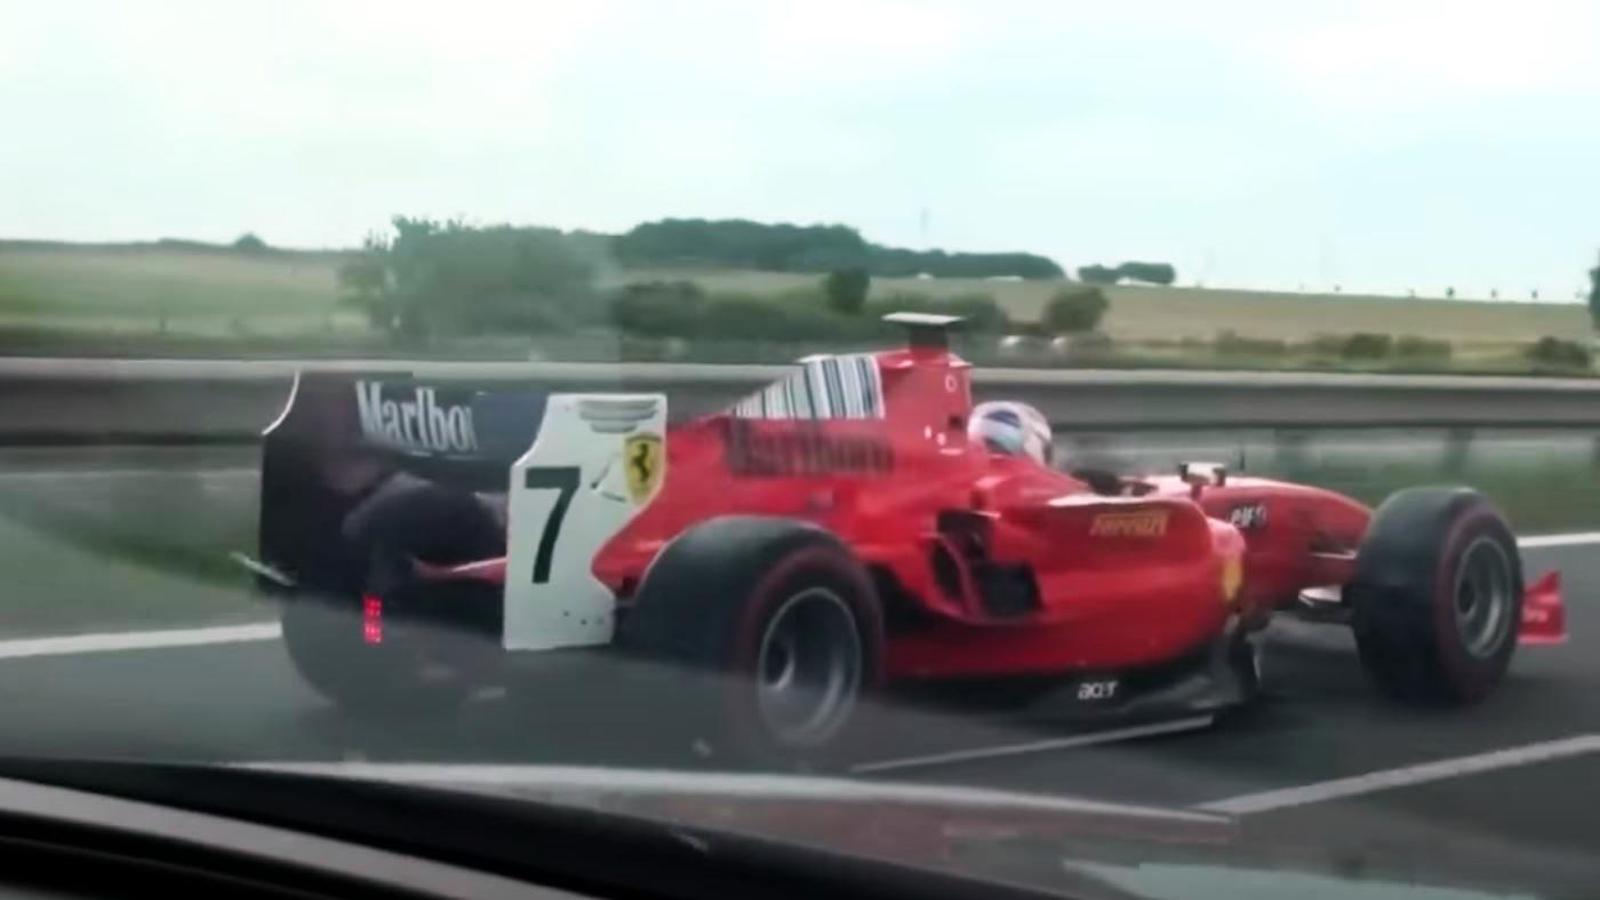 ‘F1 Car’ Spotted Sending It On Major European Motorway